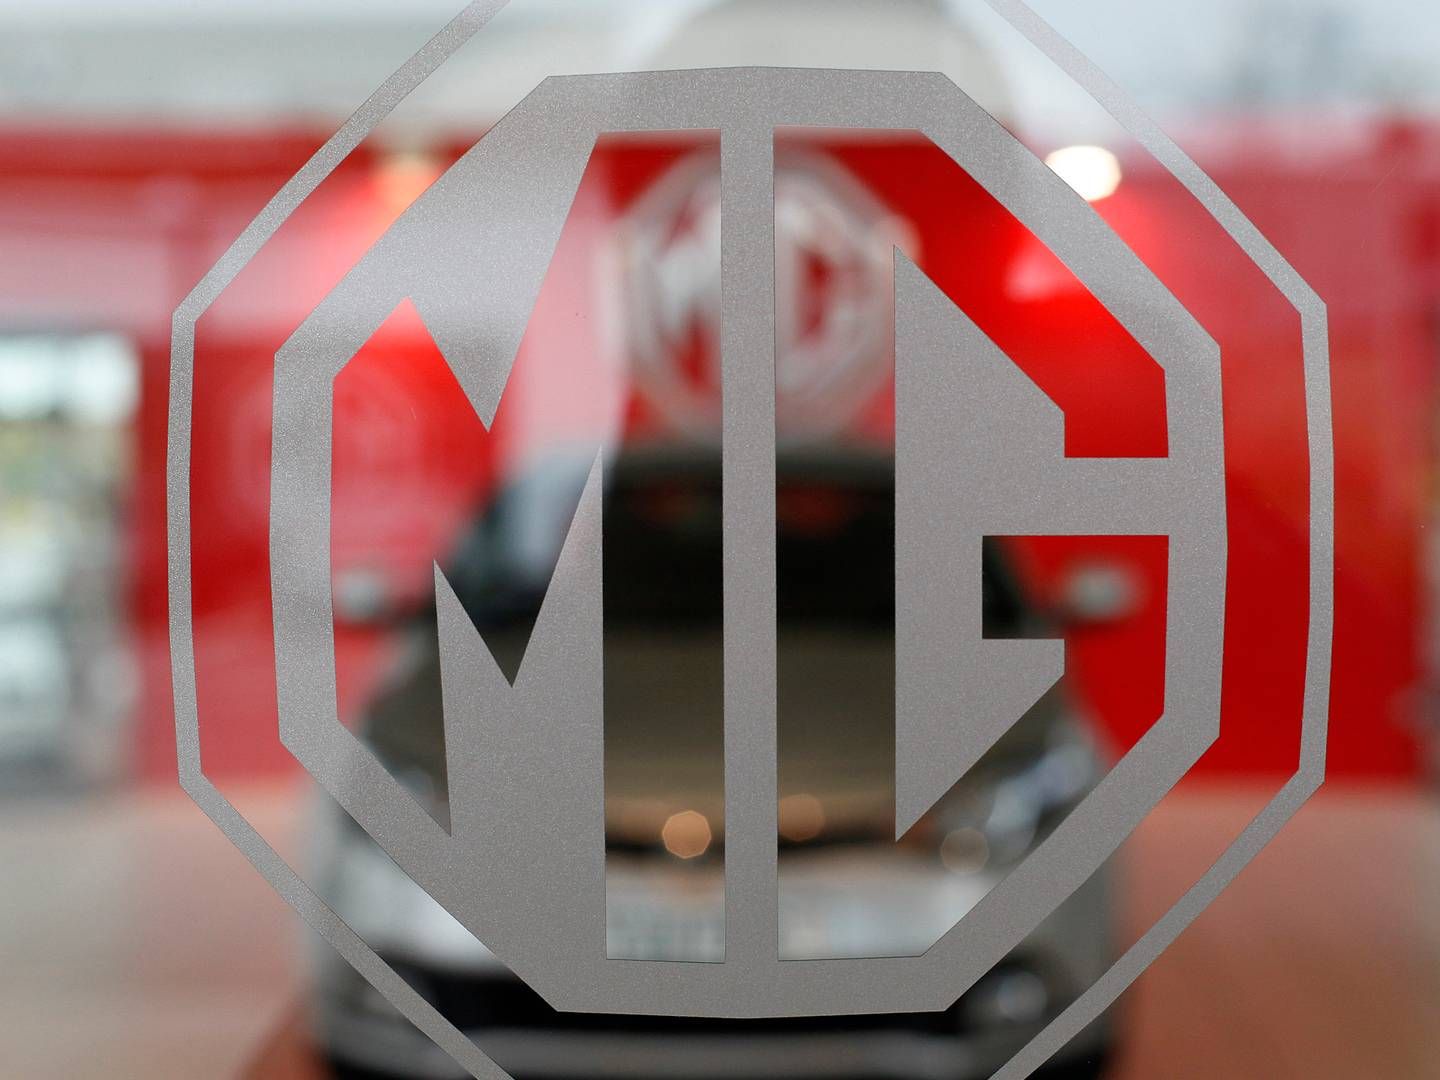 MG blev stiftet i 1924 i Storbritannien og er i dag ejet af kinesisk Nanjing Automobile Group.